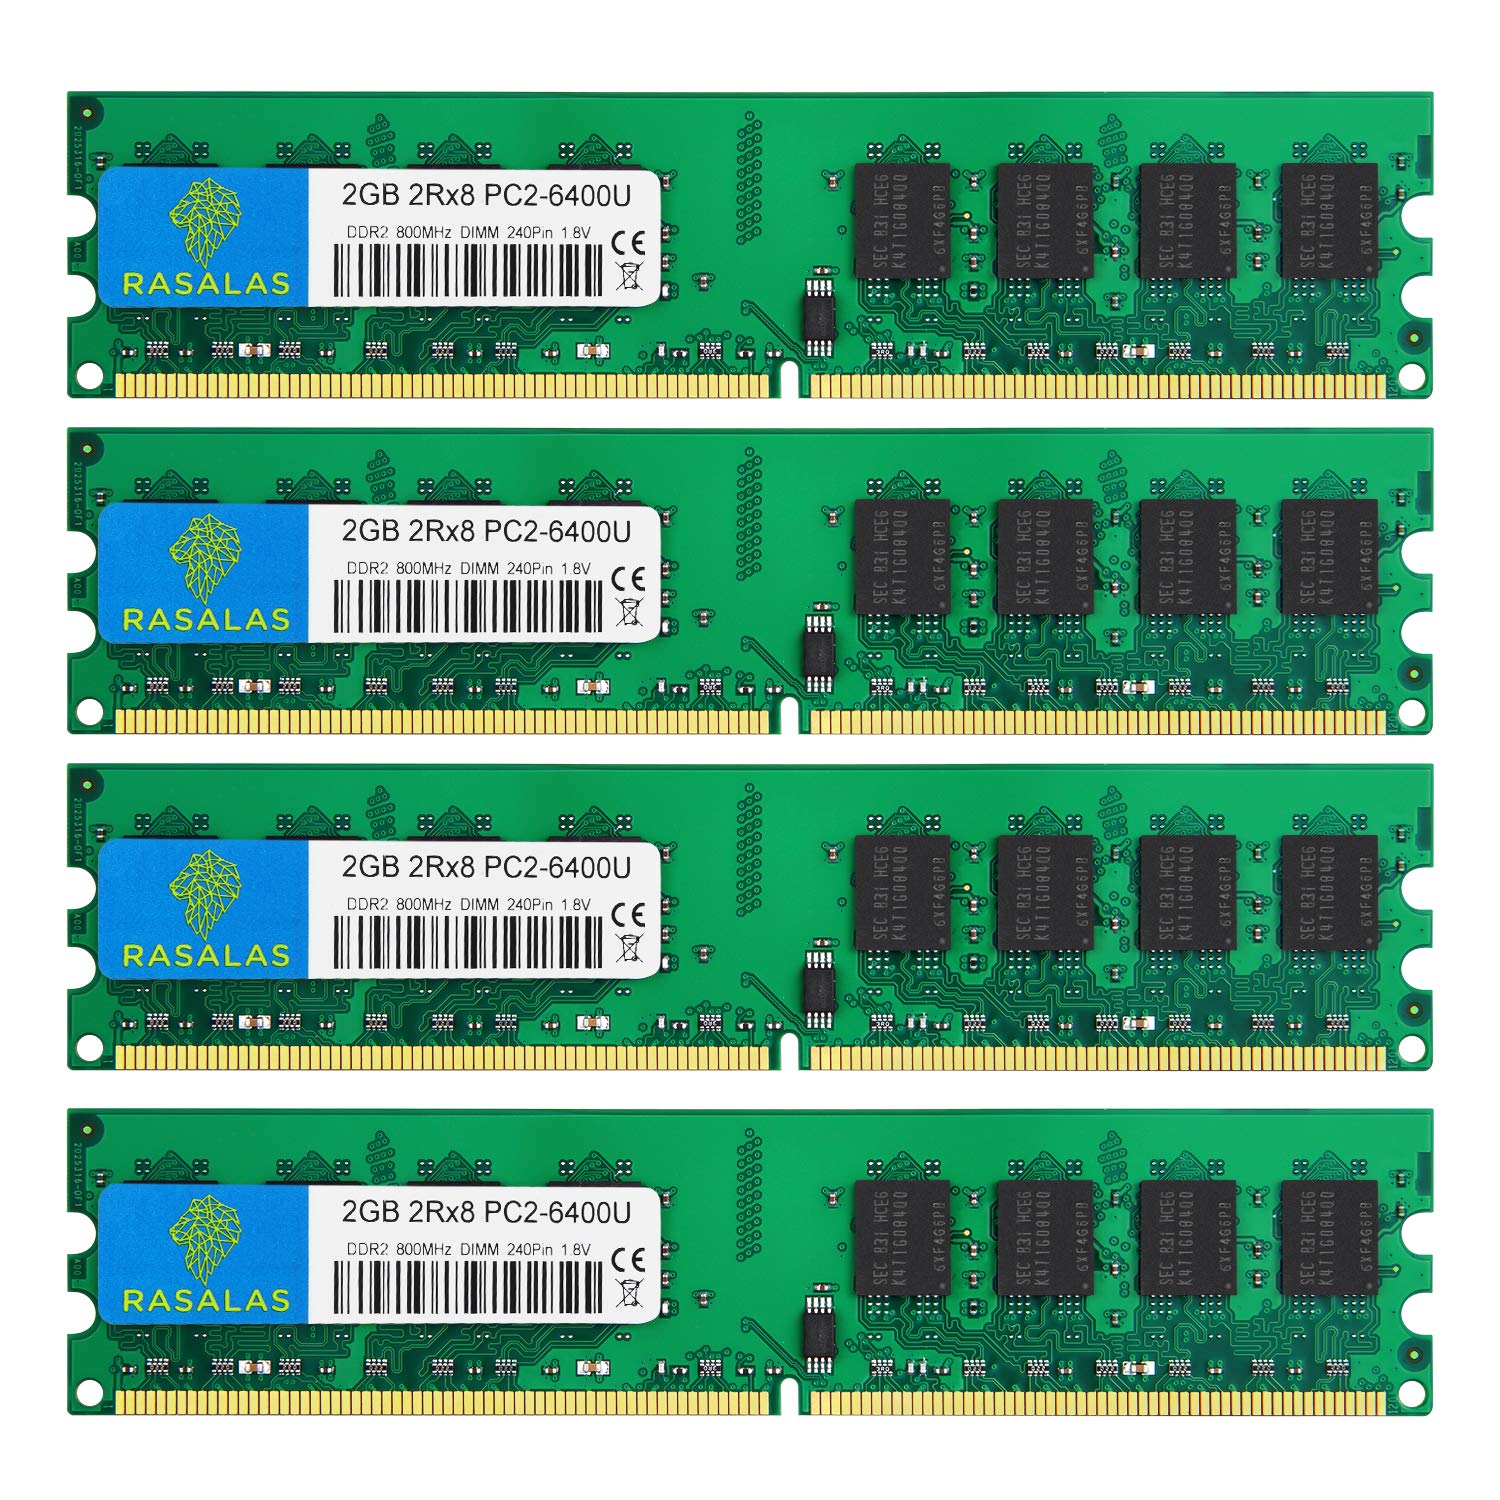 商品情報商品の説明製品ブランド: Rasalas 製品モデル: 2GB×4枚, 240-pin UDIMM, PC2-6400 DDR2 800 MHz 適用対象: デスクトップ・パソコン メモリ容量: 2GB×4枚 ピン数: 240-Pin DIMM 転送タイプ: DDR2 PC2-6400 メモリの周波数: 800MHz メモリの電圧: 1.8 V 遅延記述: CL6主な仕様 Rasalas DDR2 800 PC2-6400 4枚x2GB DDR2-800 Udimm 2Rx8 1.8V CL6 Non-ECC デスクトップ・コンピュータメモリー，デスクトップパソコン用 増設メモリです。brDDR2 800 240Pin CL6 Non-ECC DIMM。購入前に、 RAMモデル、RAMスロットなどのパラメータを確認してください。お客様のコンピュータの最大メモリ。よくわからない場合は、ここでお手伝いします。brメモリ形式 : DDR2-SDRAM, メモリモジュール形状 : 240pin, Unbuffered DIMM, チップ構成 : 両面実装br安心してお買い上げください。何か質問があれば、いつでもbr保証期間：永久保証